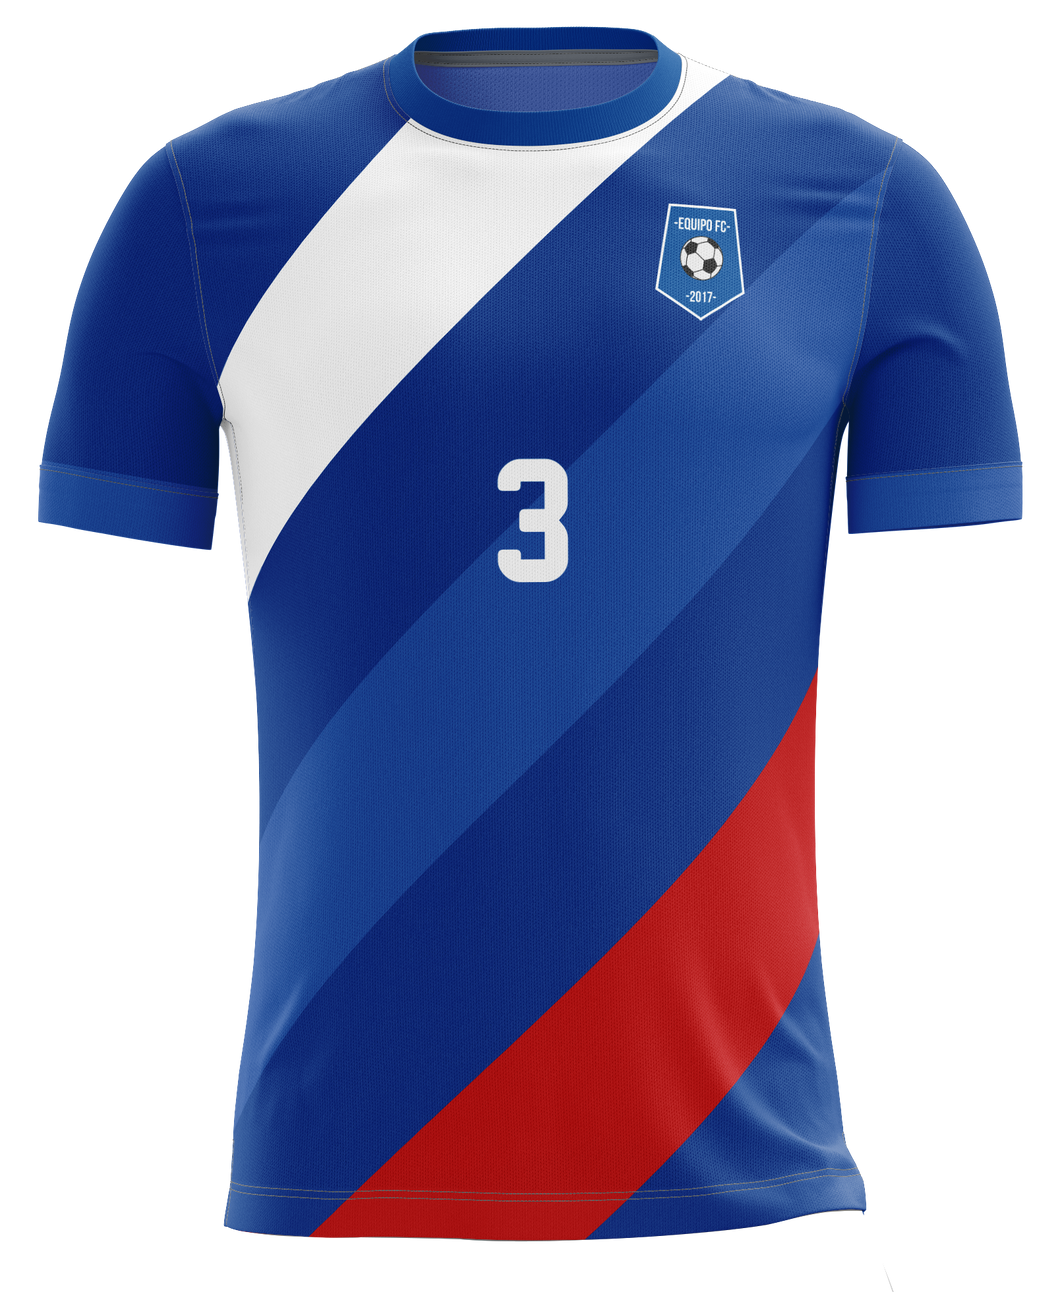 VOE Short Sleeve Futbol / Soccer Shirt - 